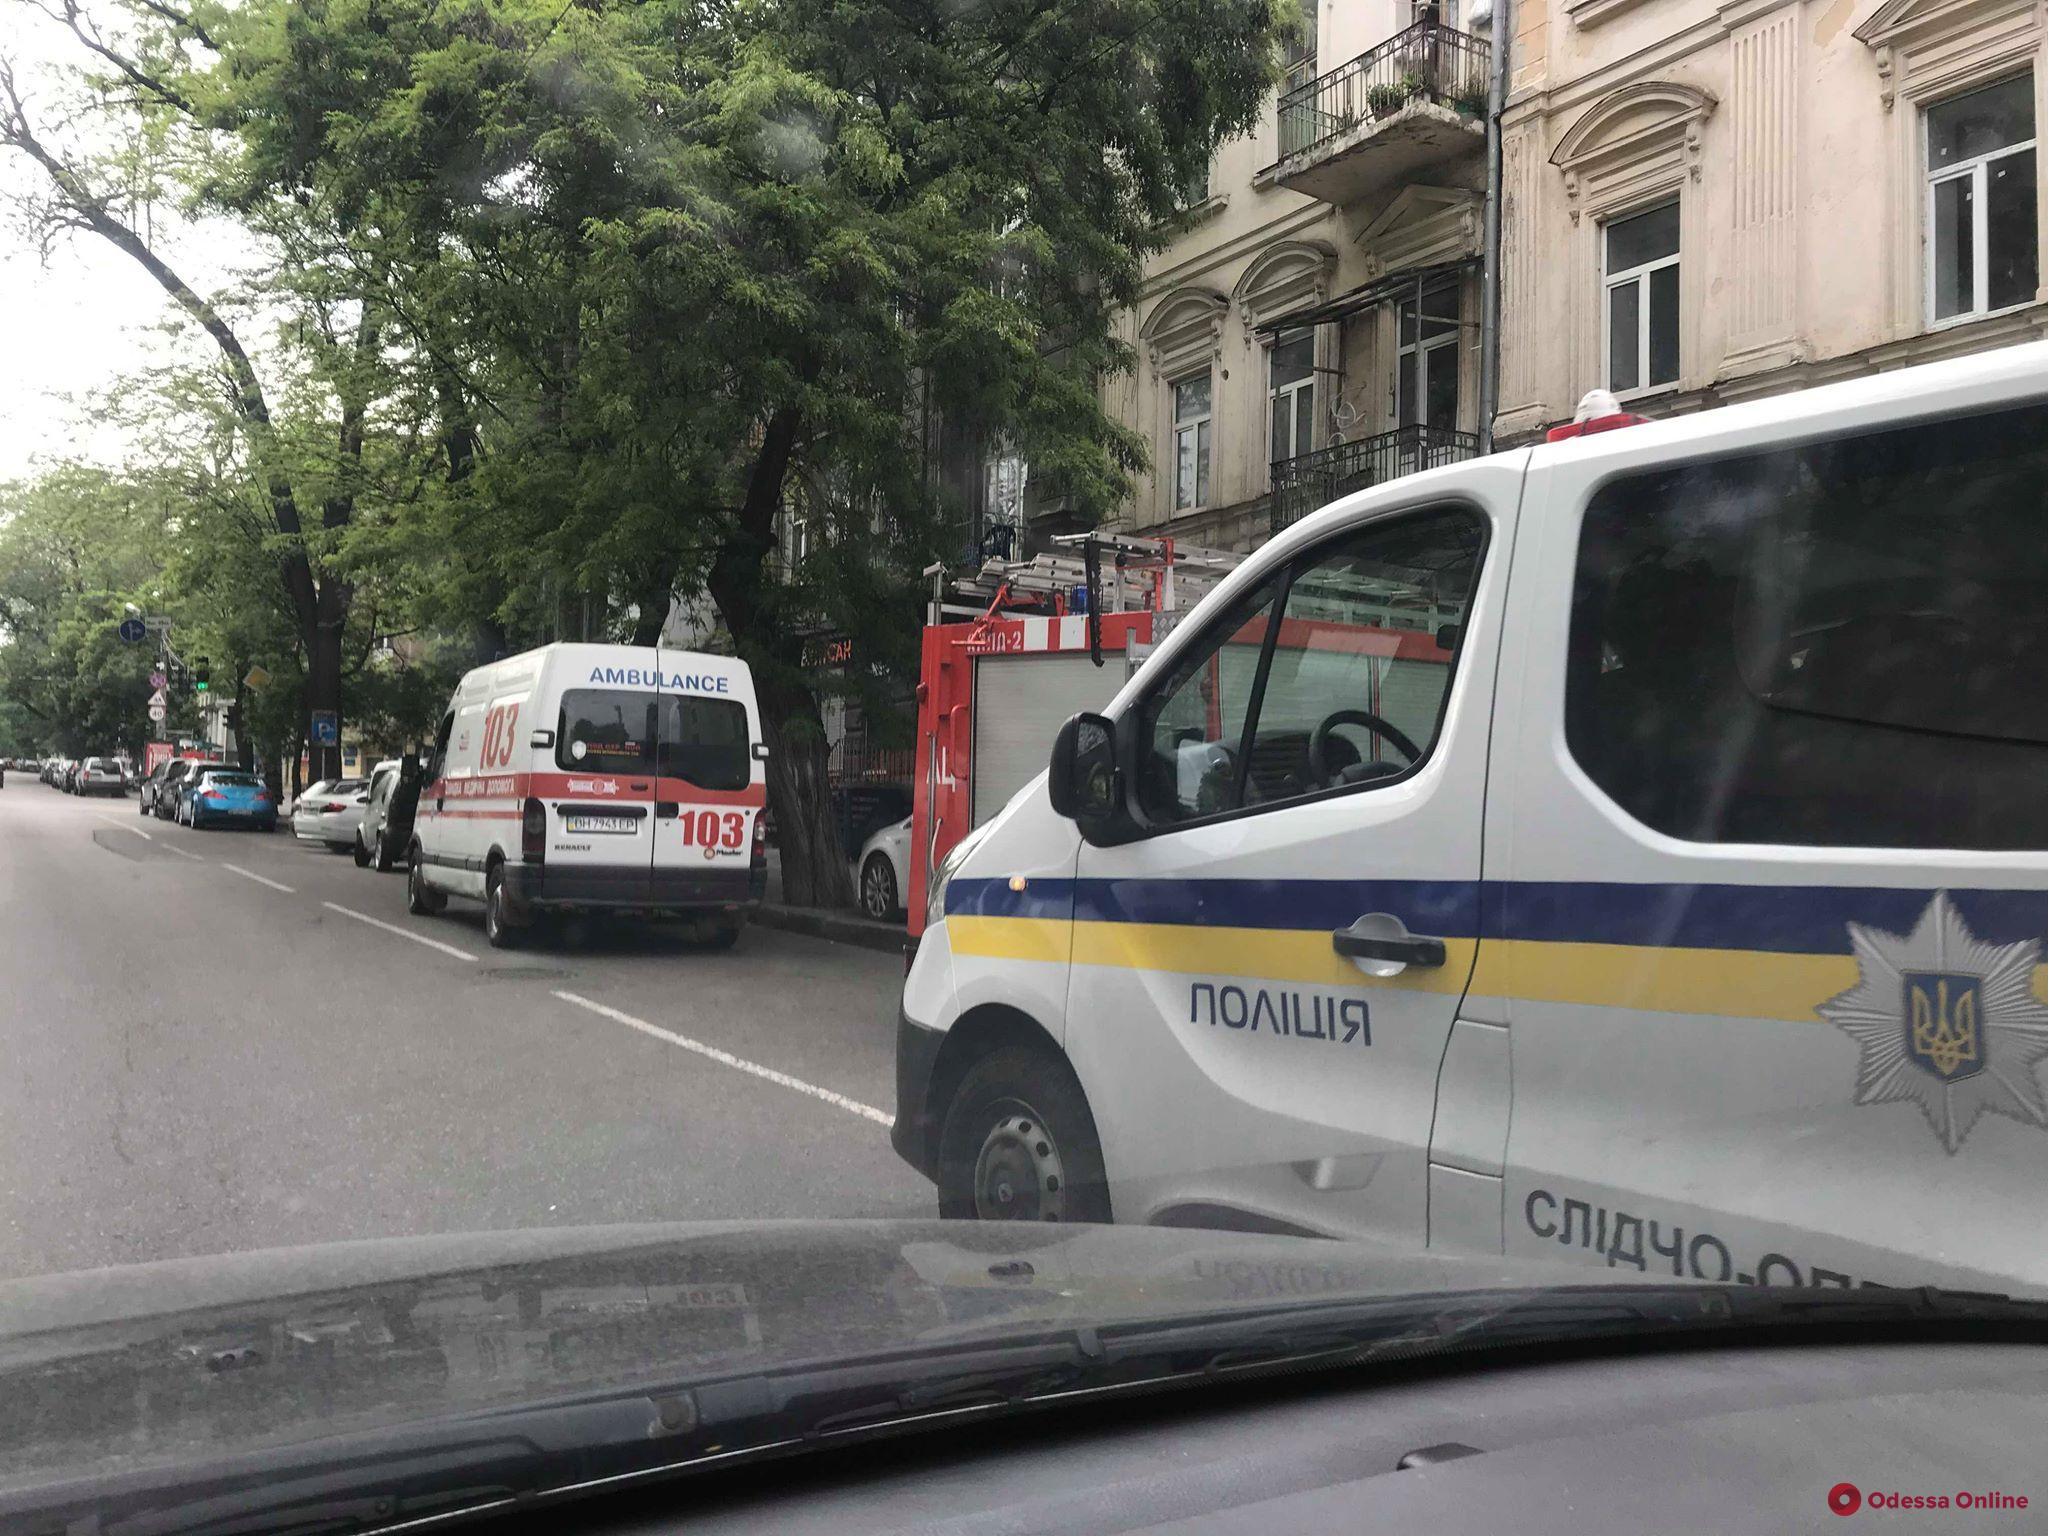 Одесса: в отделении банка ищут бомбу